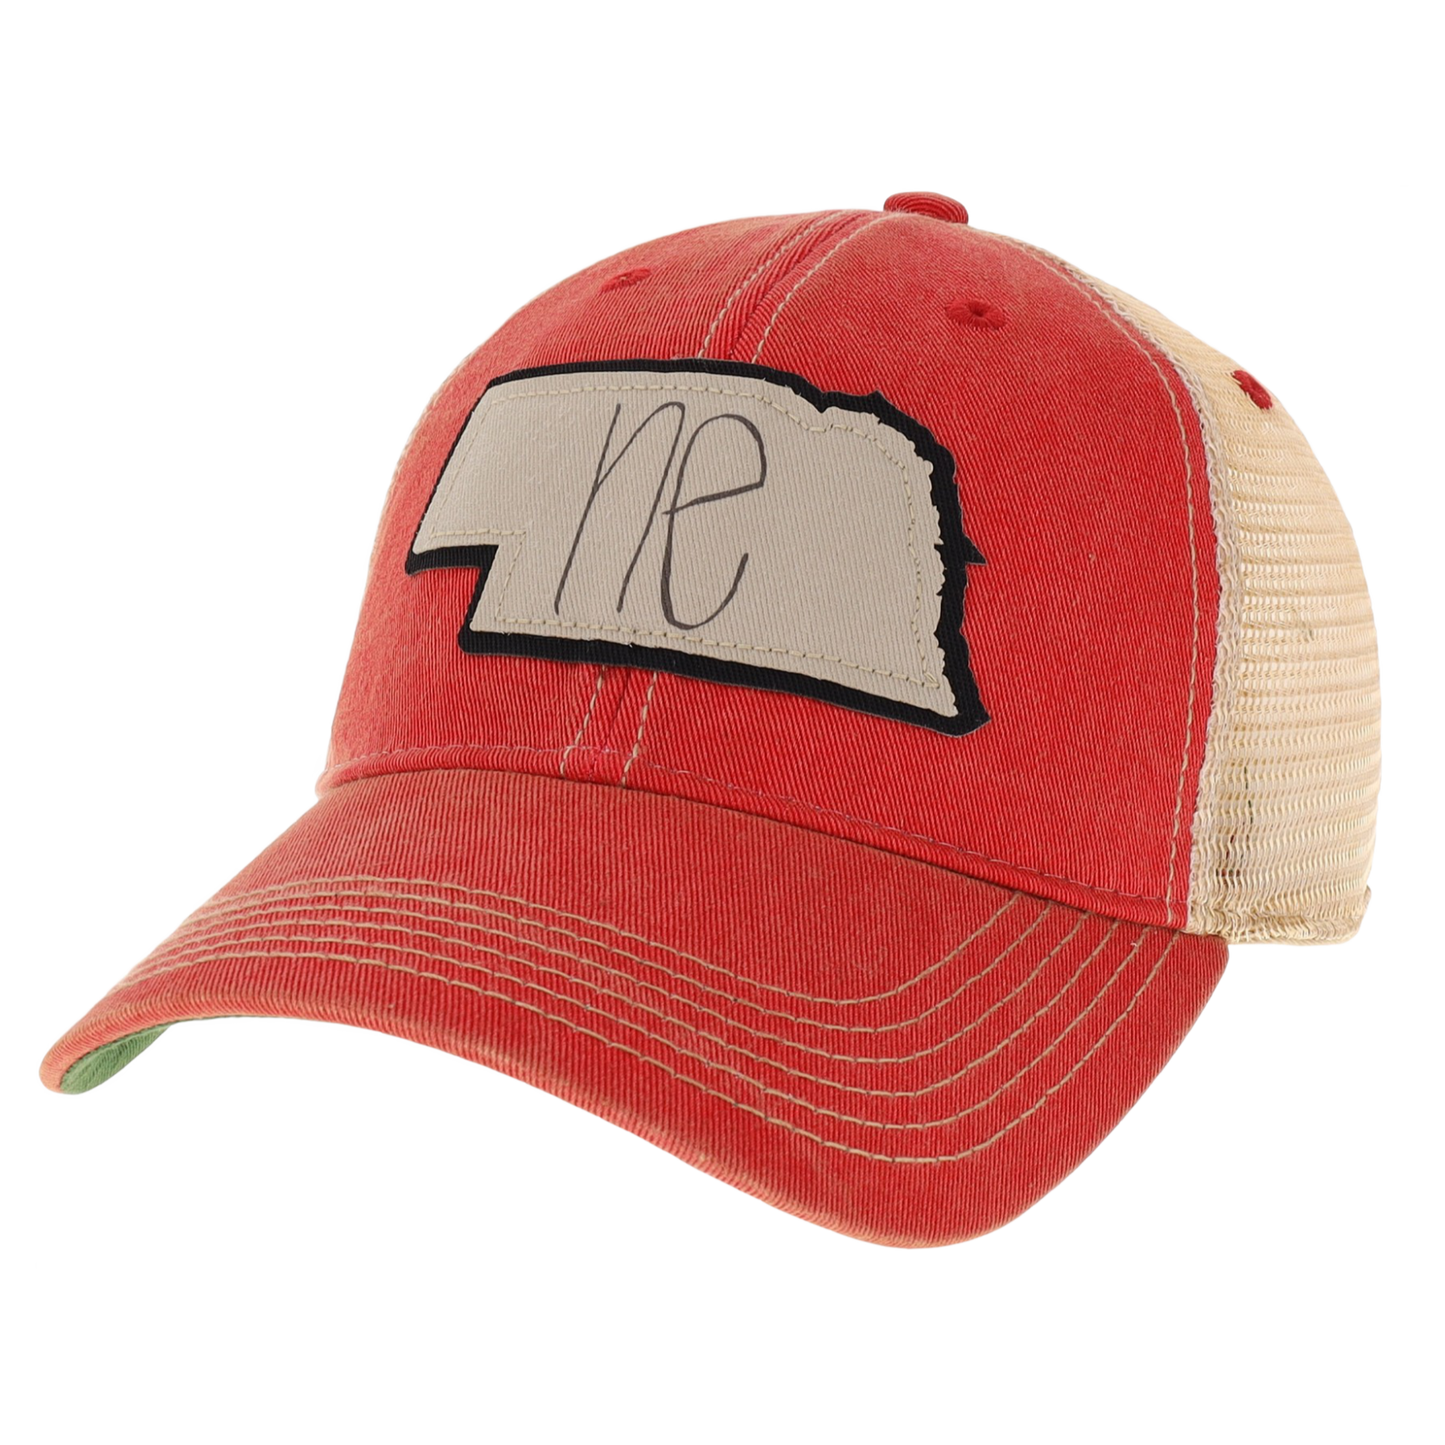 Nebraska Old Favorite Trucker Hat in Scarlet